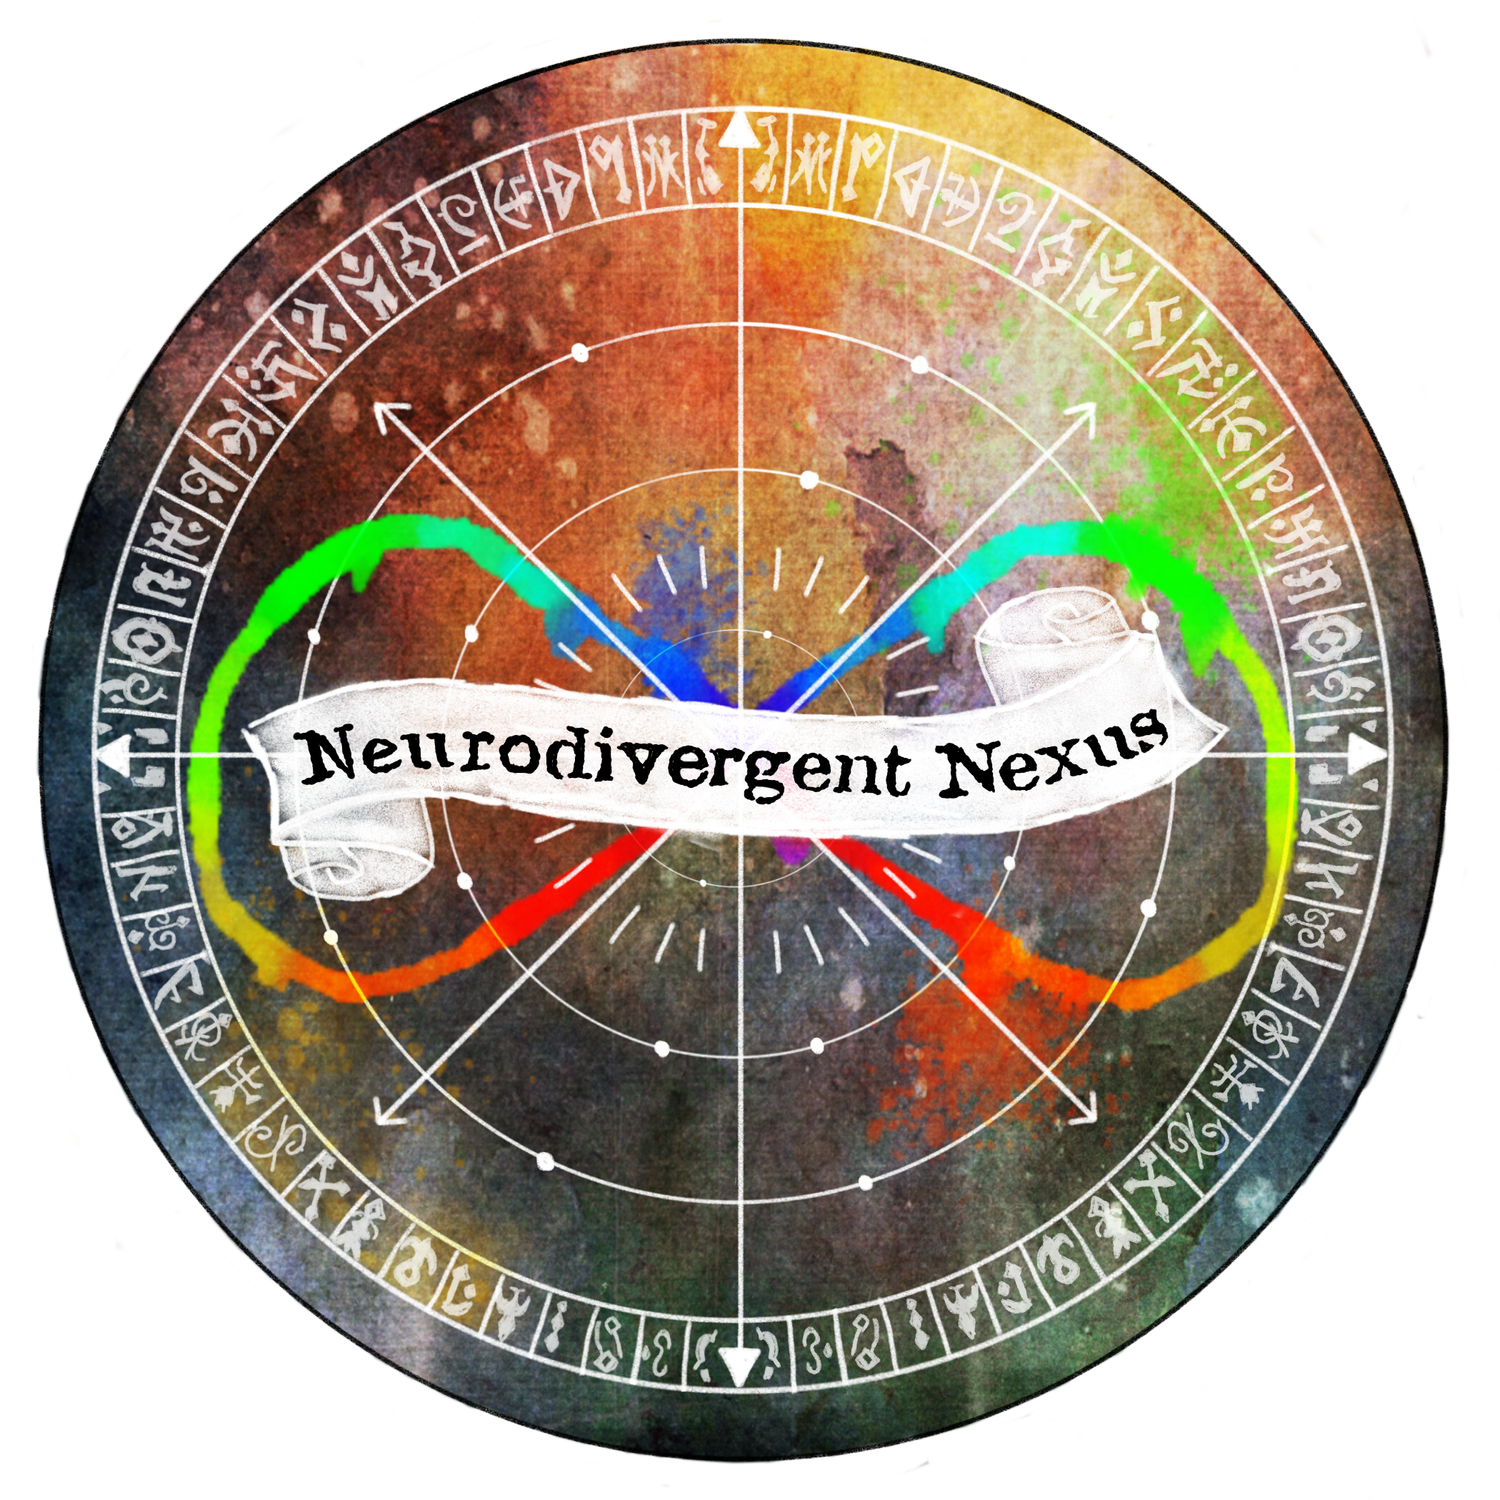 Neurodivergent Nexus